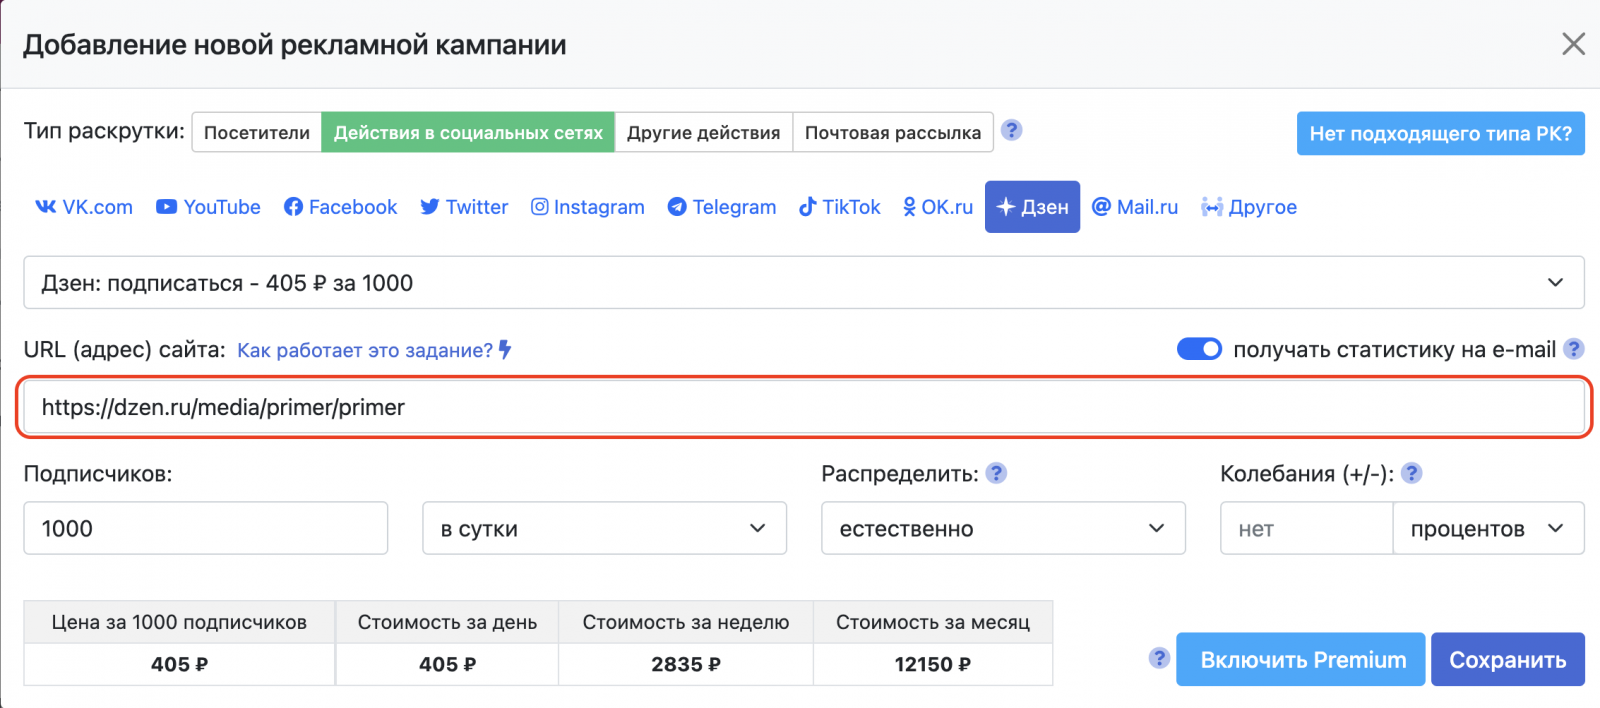 Как раскрутить канал на Яндекс.Дзен